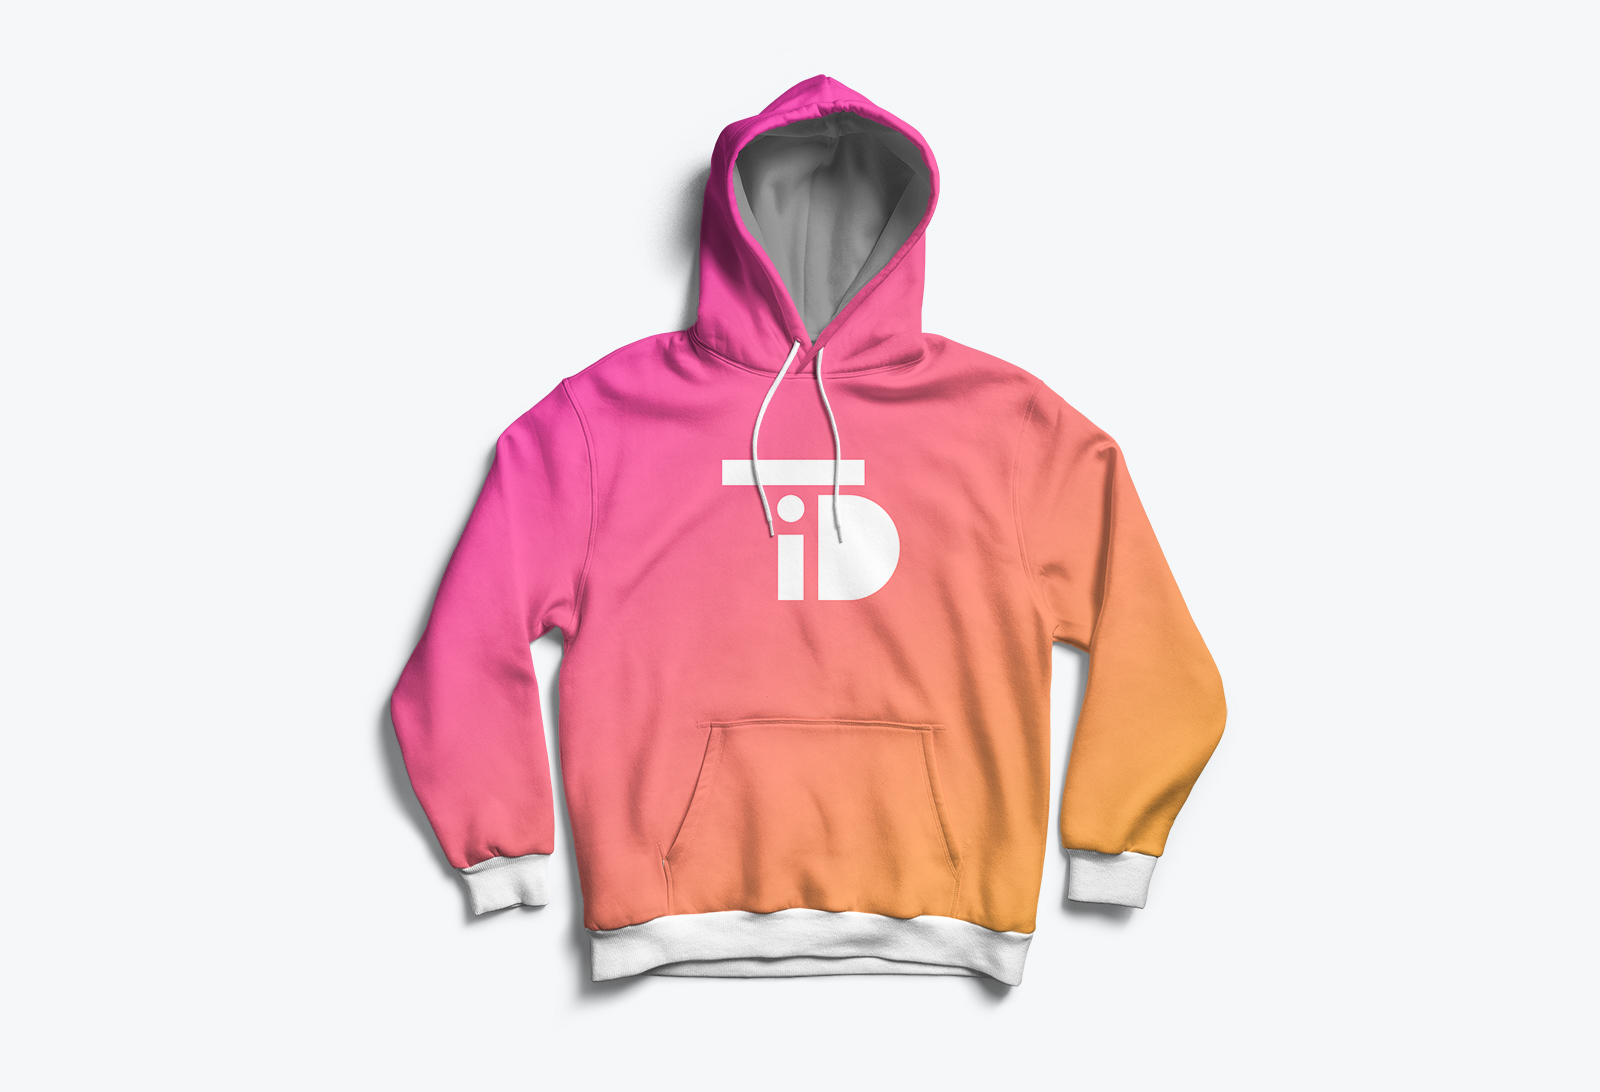 TiD branded hoodie